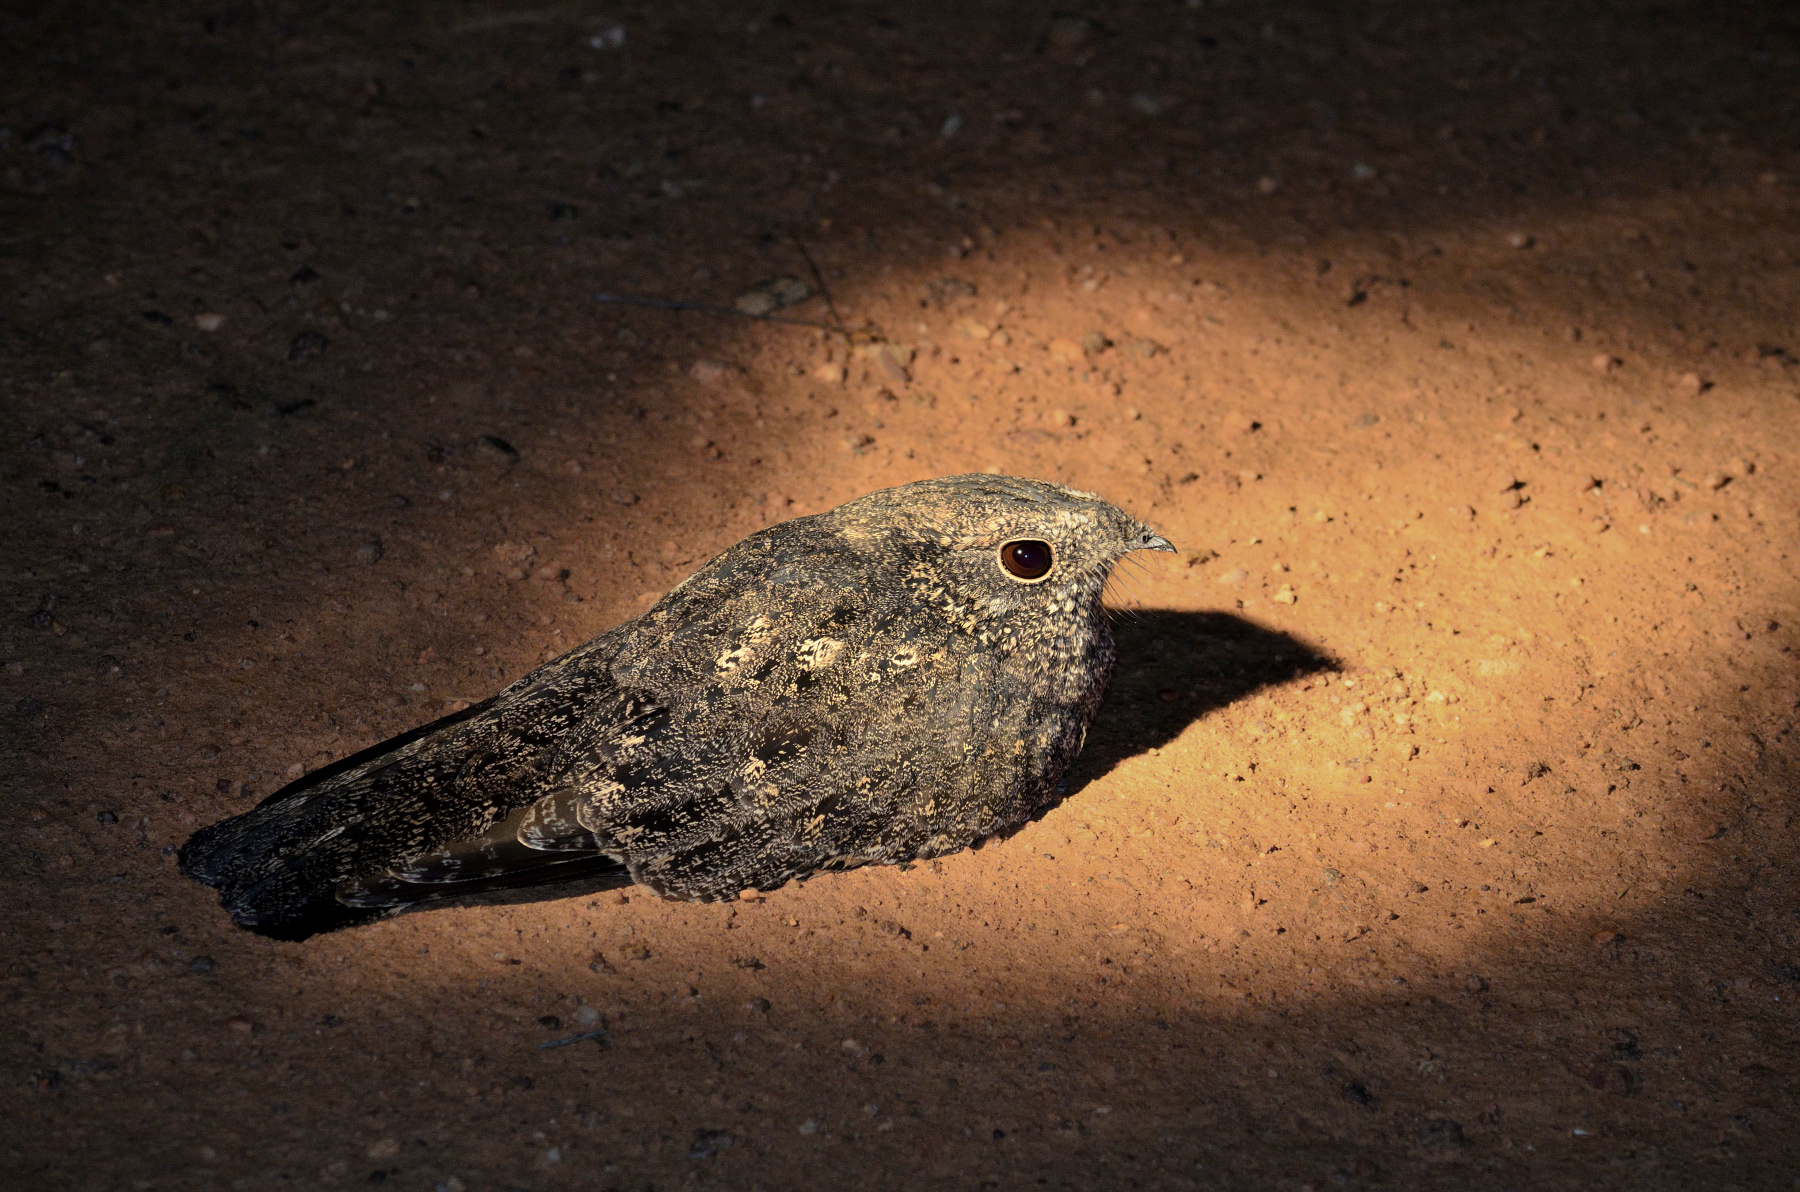 nightjar bird resting on floor under torch light surrey